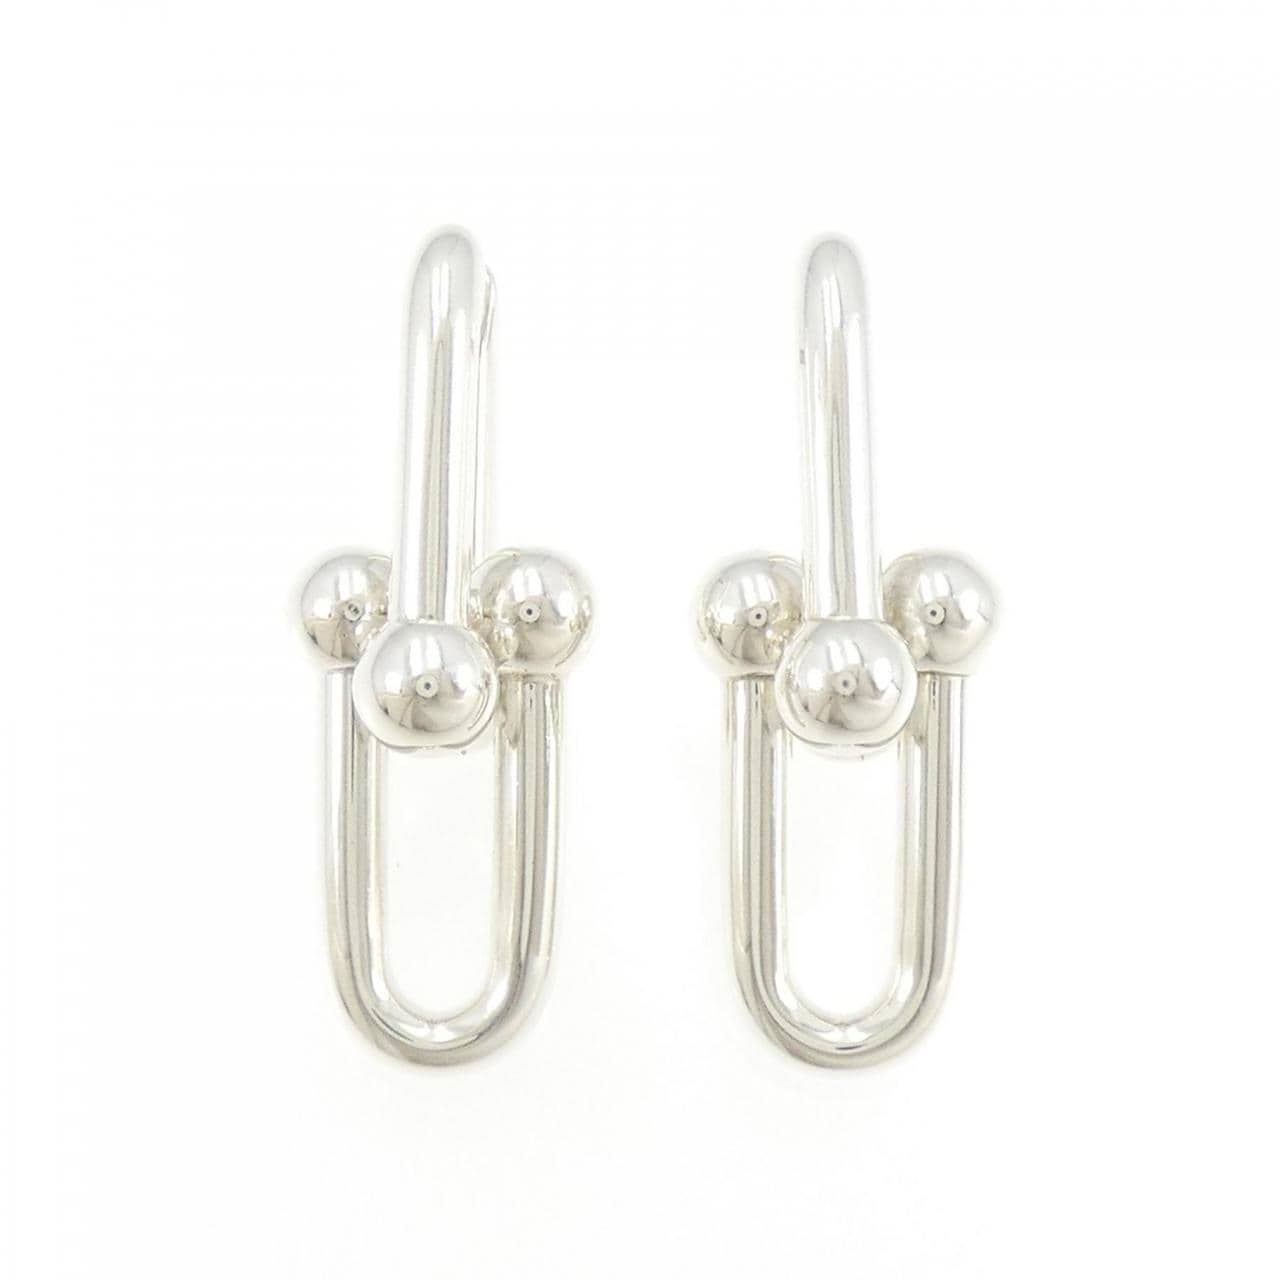 TIFFANY large link earrings